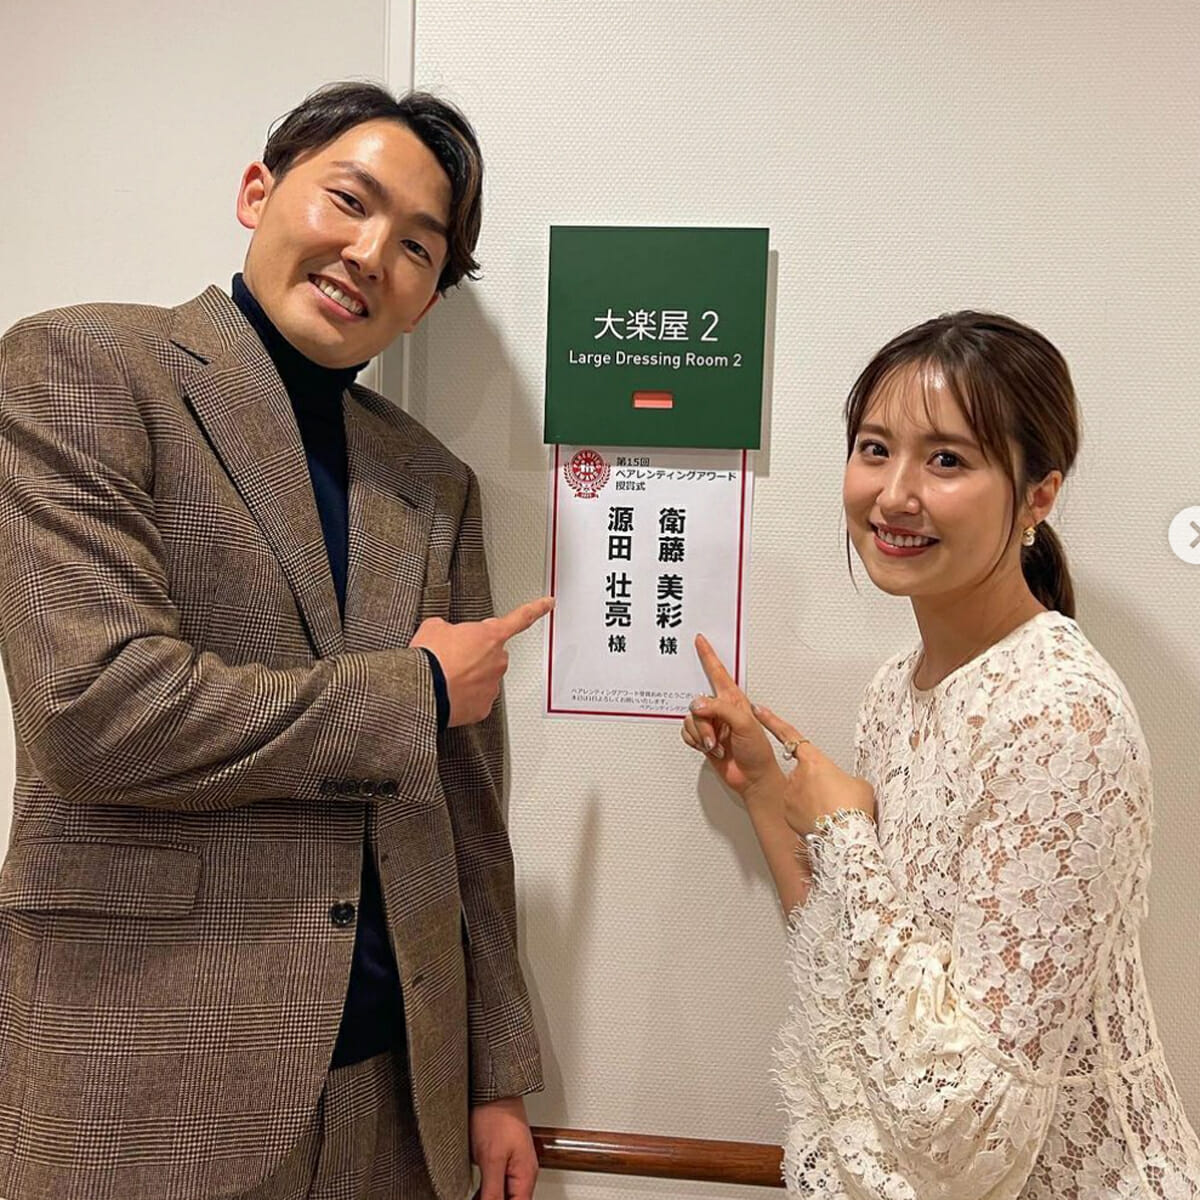 源田壮亮の妻・衛藤美彩が「乃木坂イチの勝ち組」認定された一枚の写真